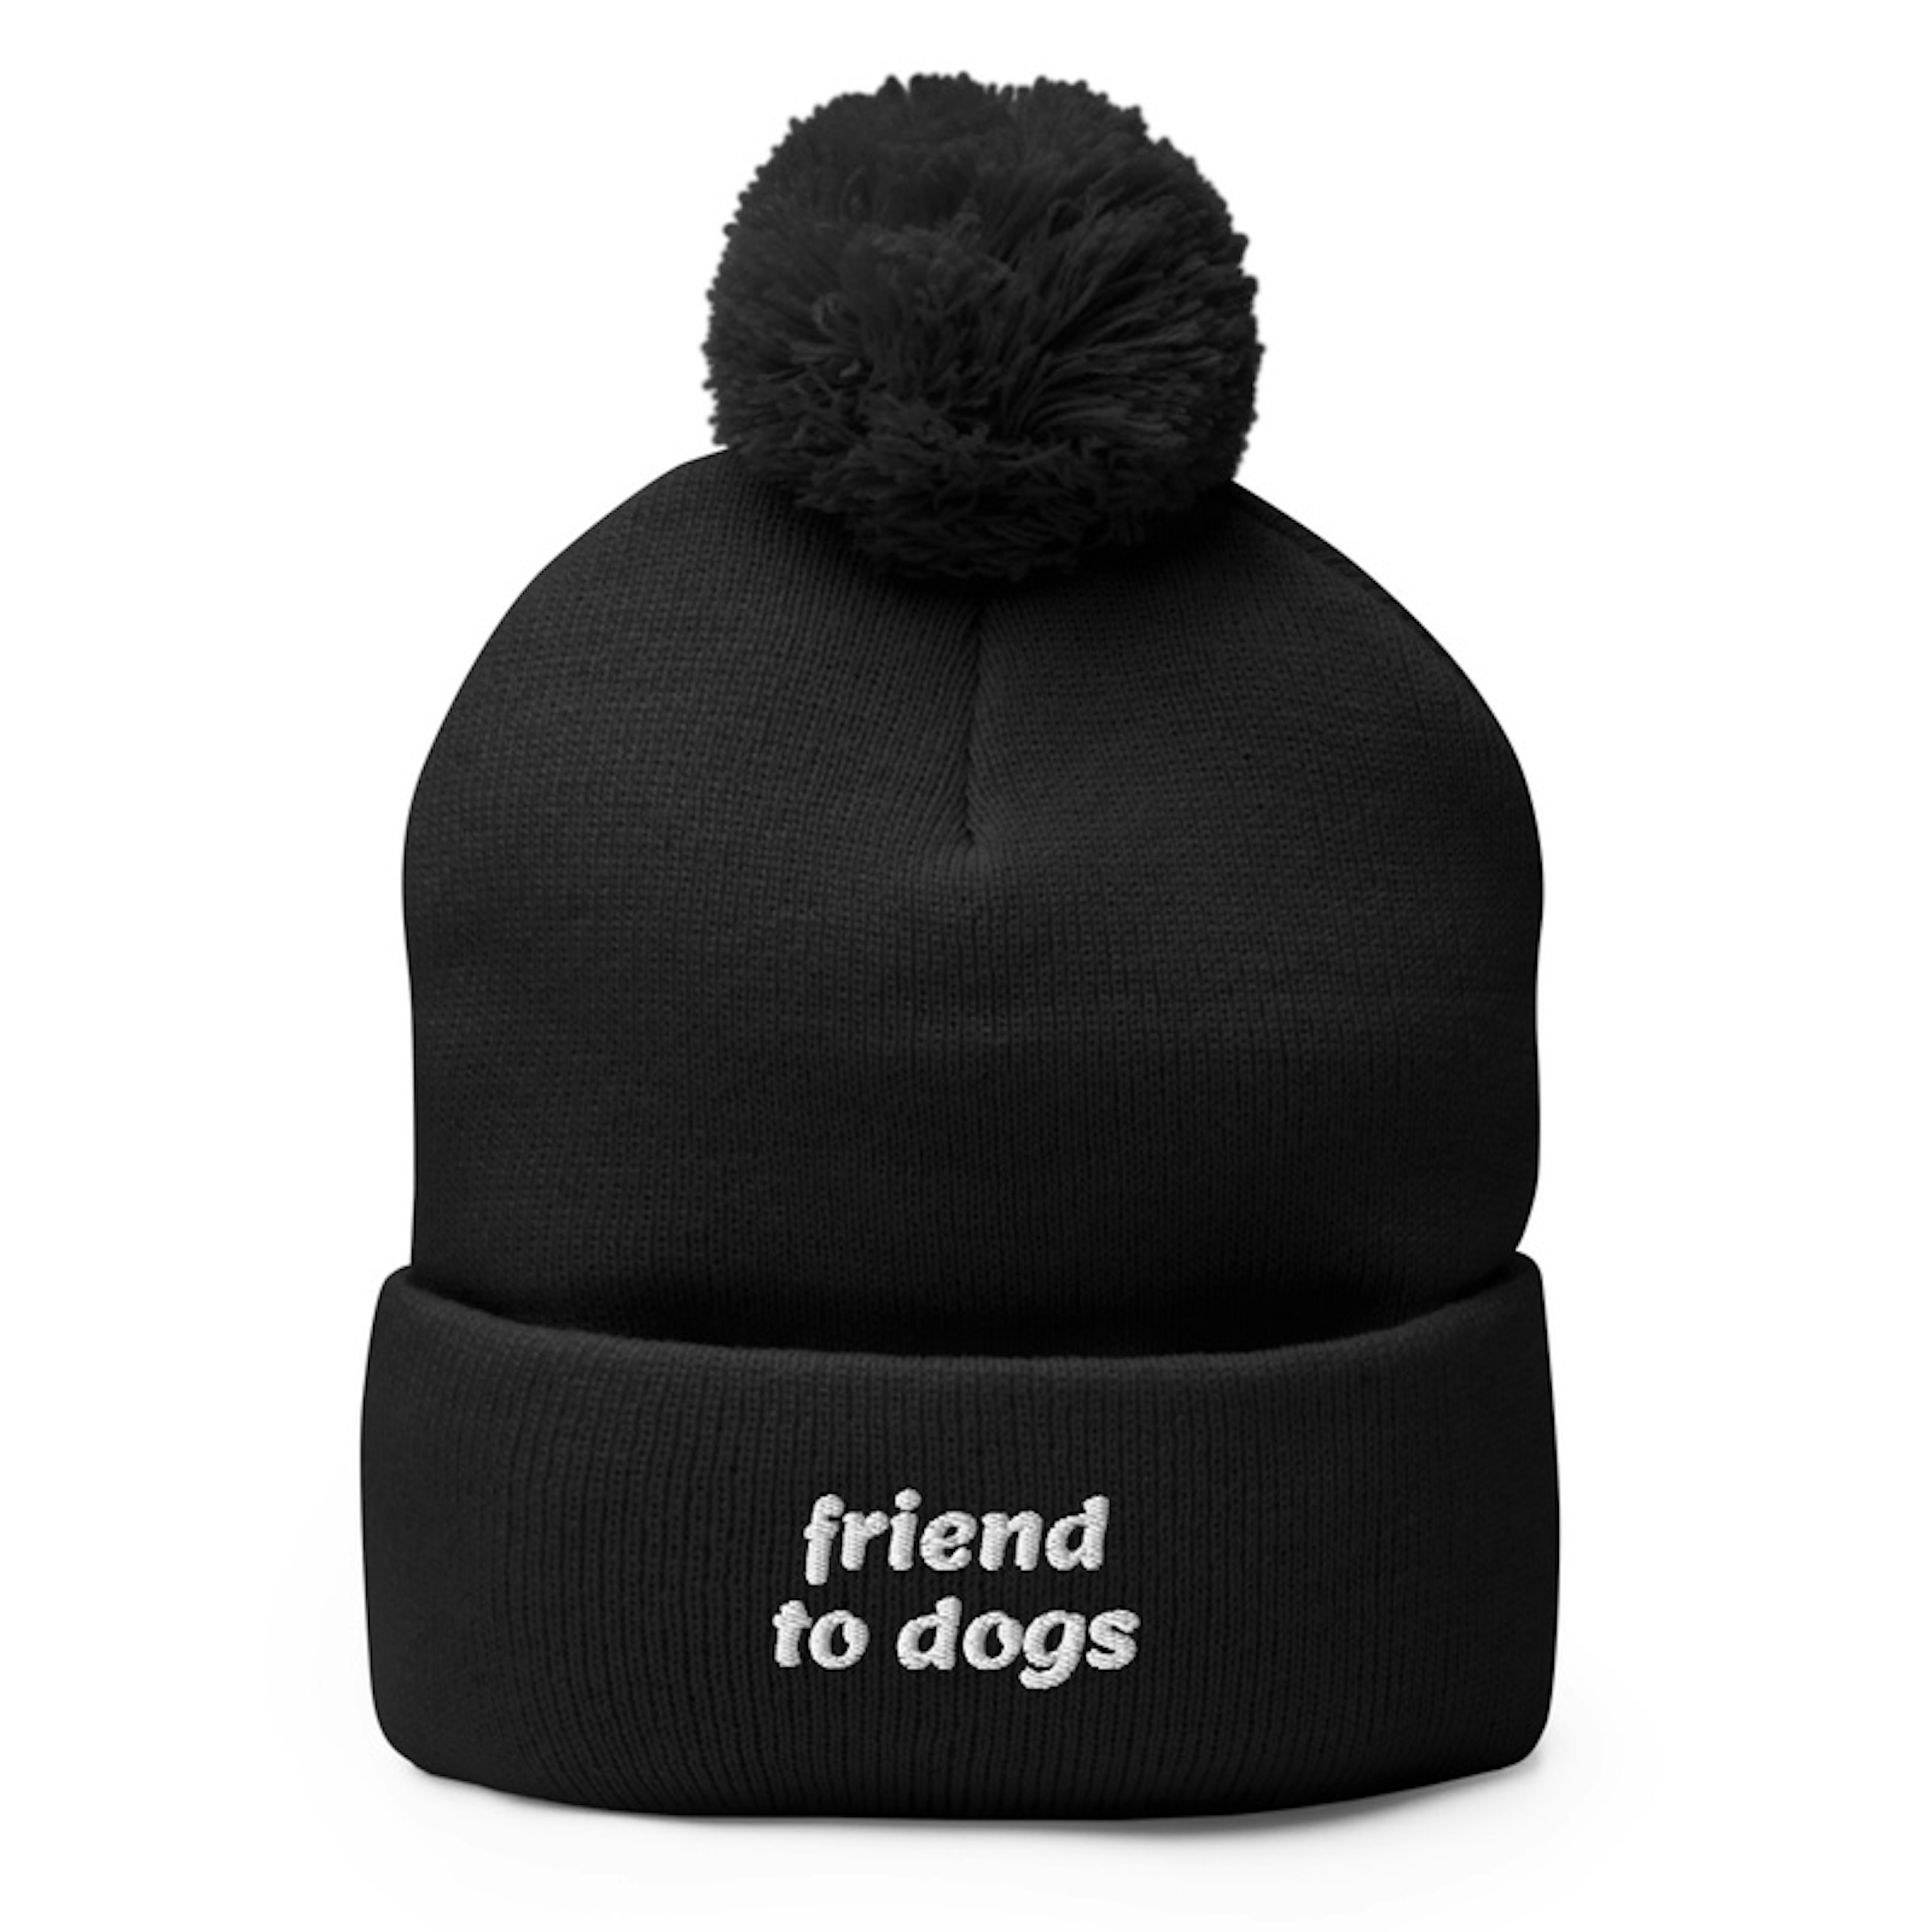 Friend to dogs pompom hat